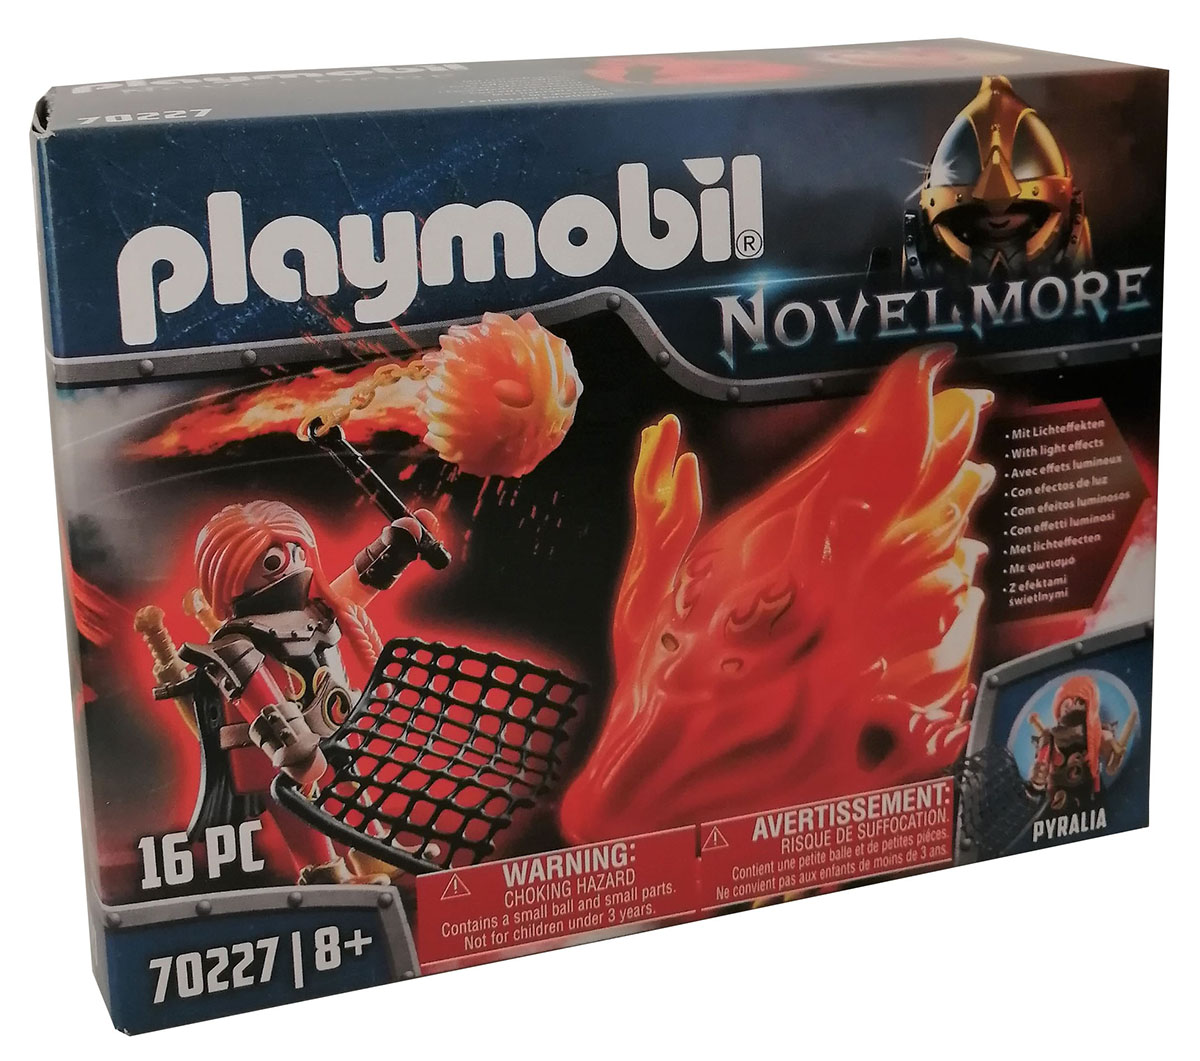 Playmobil Novelmore 70227 Pyralia Hüterin des Feuers Kämpferin Kriegerin Feuerwaffe Feuergeist mit Lichteffekt, Fangnetz Dolch Spieleset